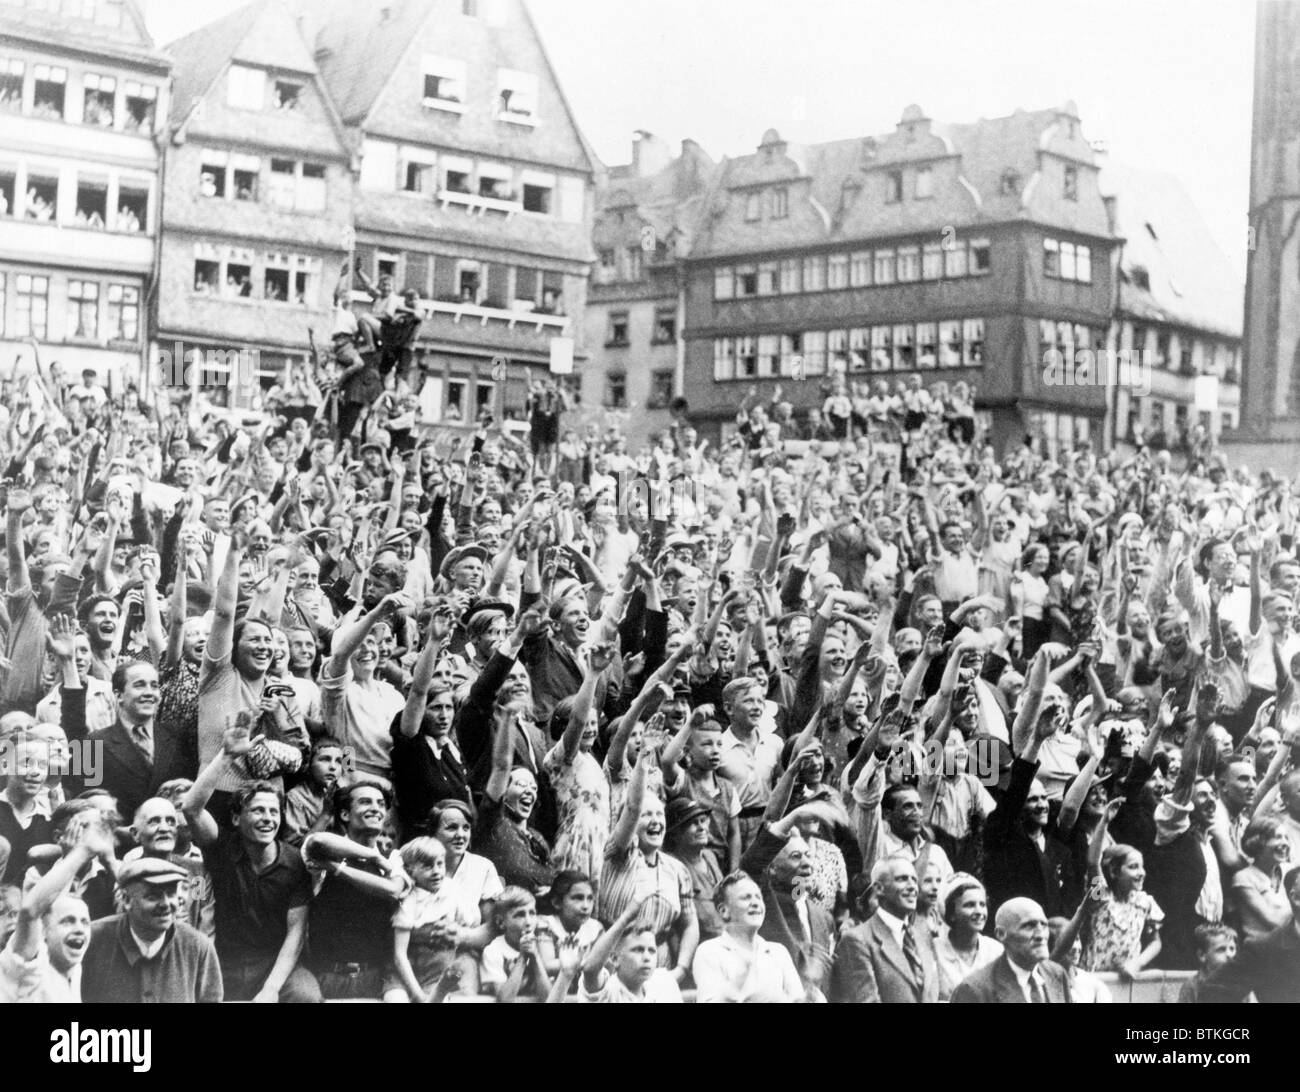 Deutschen Bewunderer jubeln Max Schmeling mit Hitlergruß im Rathaus in Frankfurt, Deutschland. Am 19. Juni 1936 gewann Schmeling die Schwergewicht-Meisterschaft mit einem 12. Runde KO von Joe Louis. Stockfoto